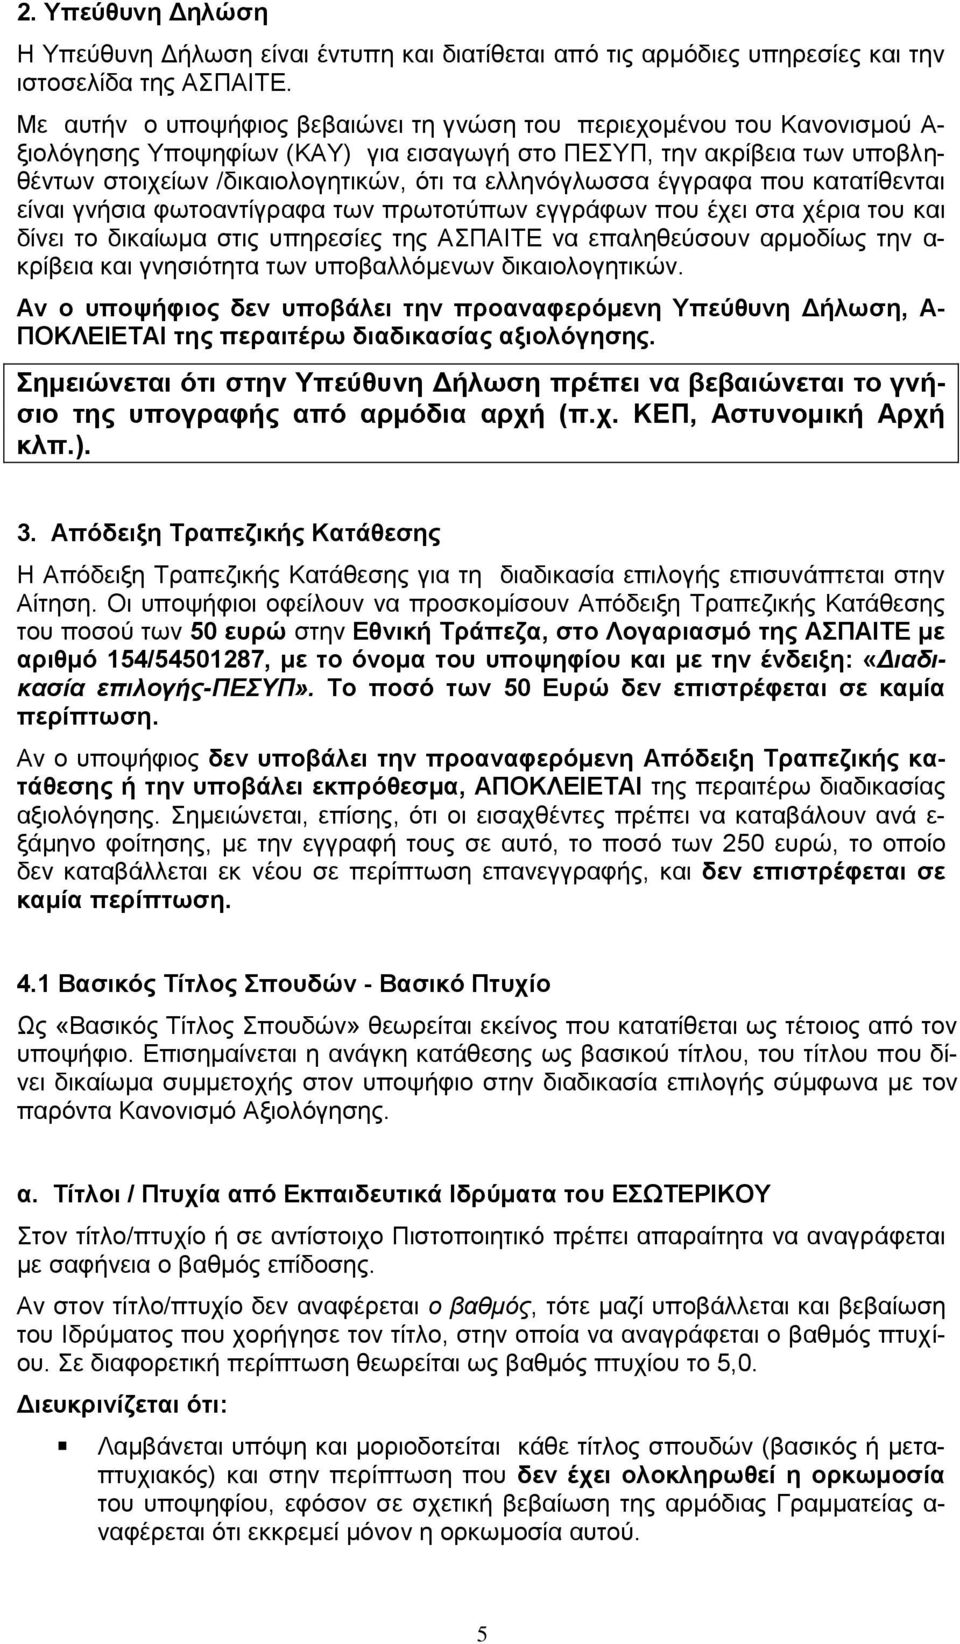 ελληνόγλωσσα έγγραφα που κατατίθενται είναι γνήσια φωτοαντίγραφα των πρωτοτύπων εγγράφων που έχει στα χέρια του και δίνει το δικαίωμα στις υπηρεσίες της ΑΣΠΑΙΤΕ να επαληθεύσουν αρμοδίως την α-